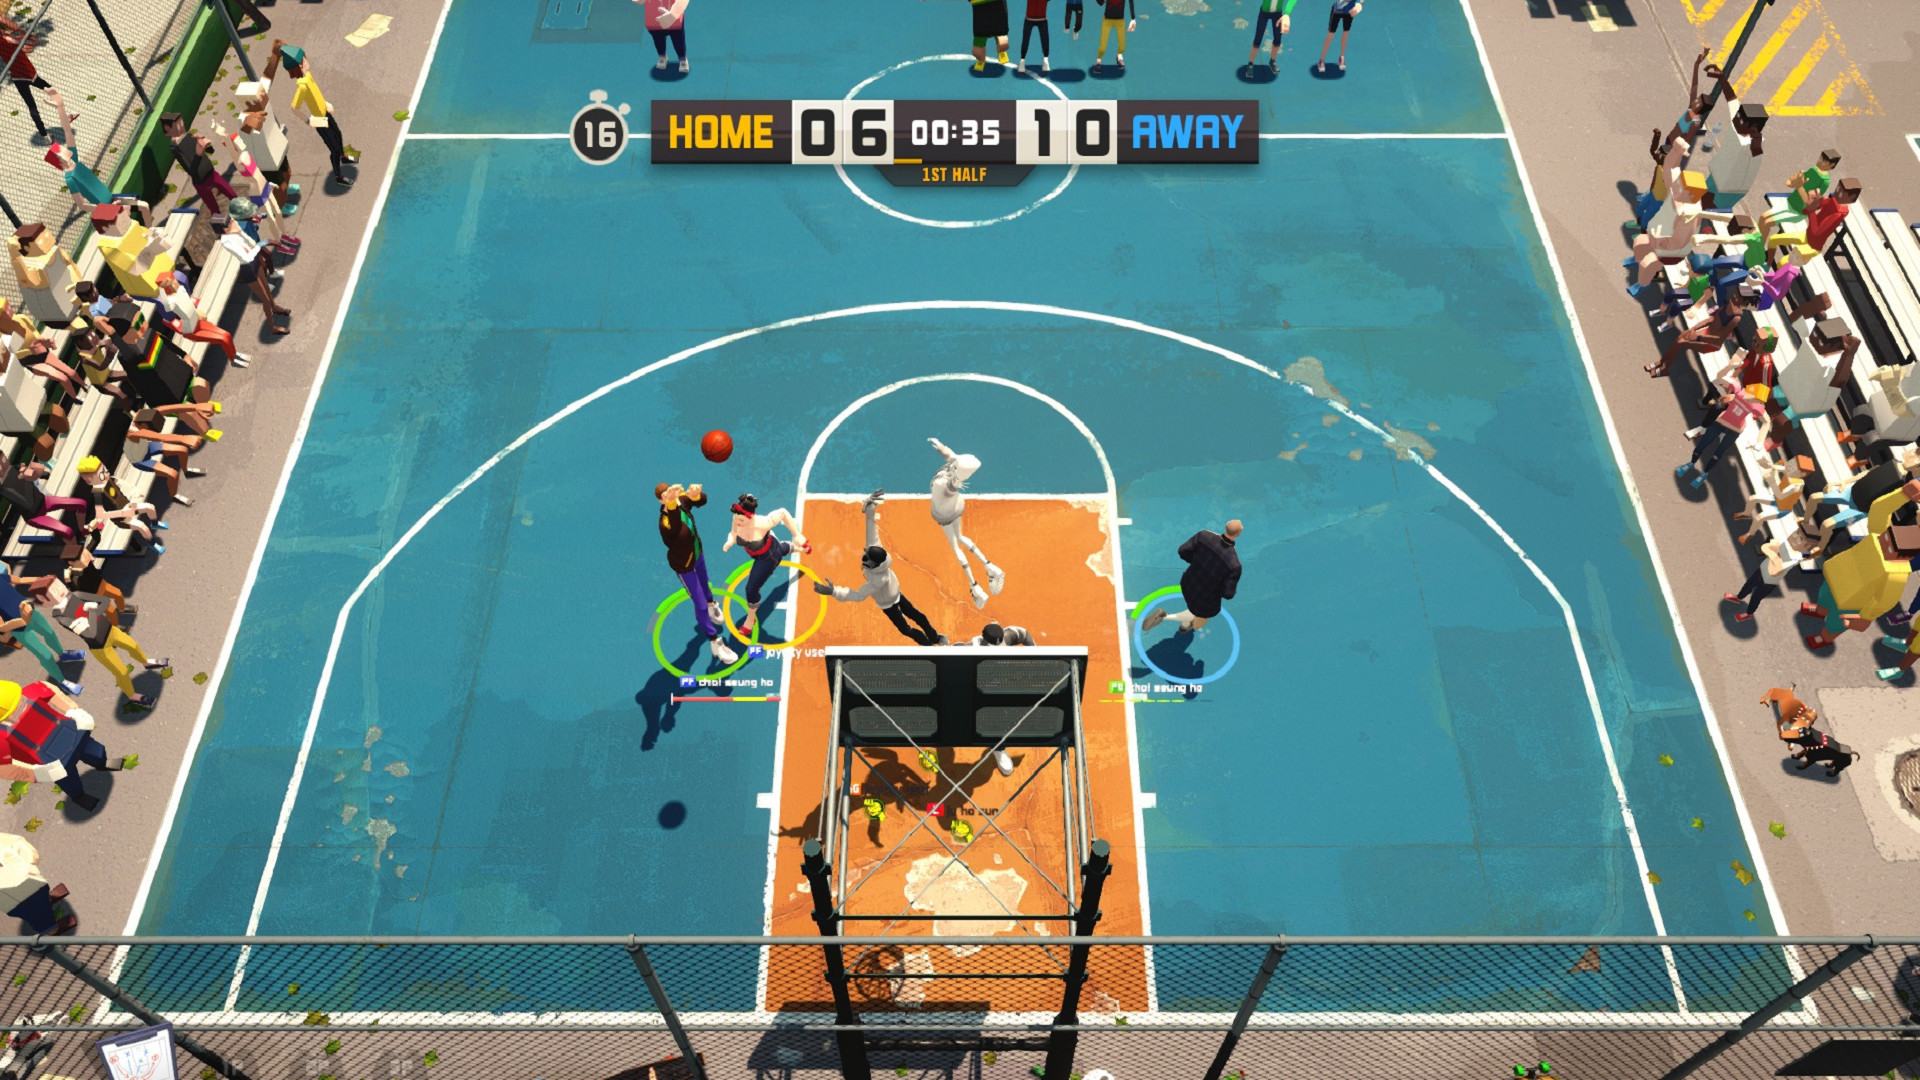 3v3 basketball game online